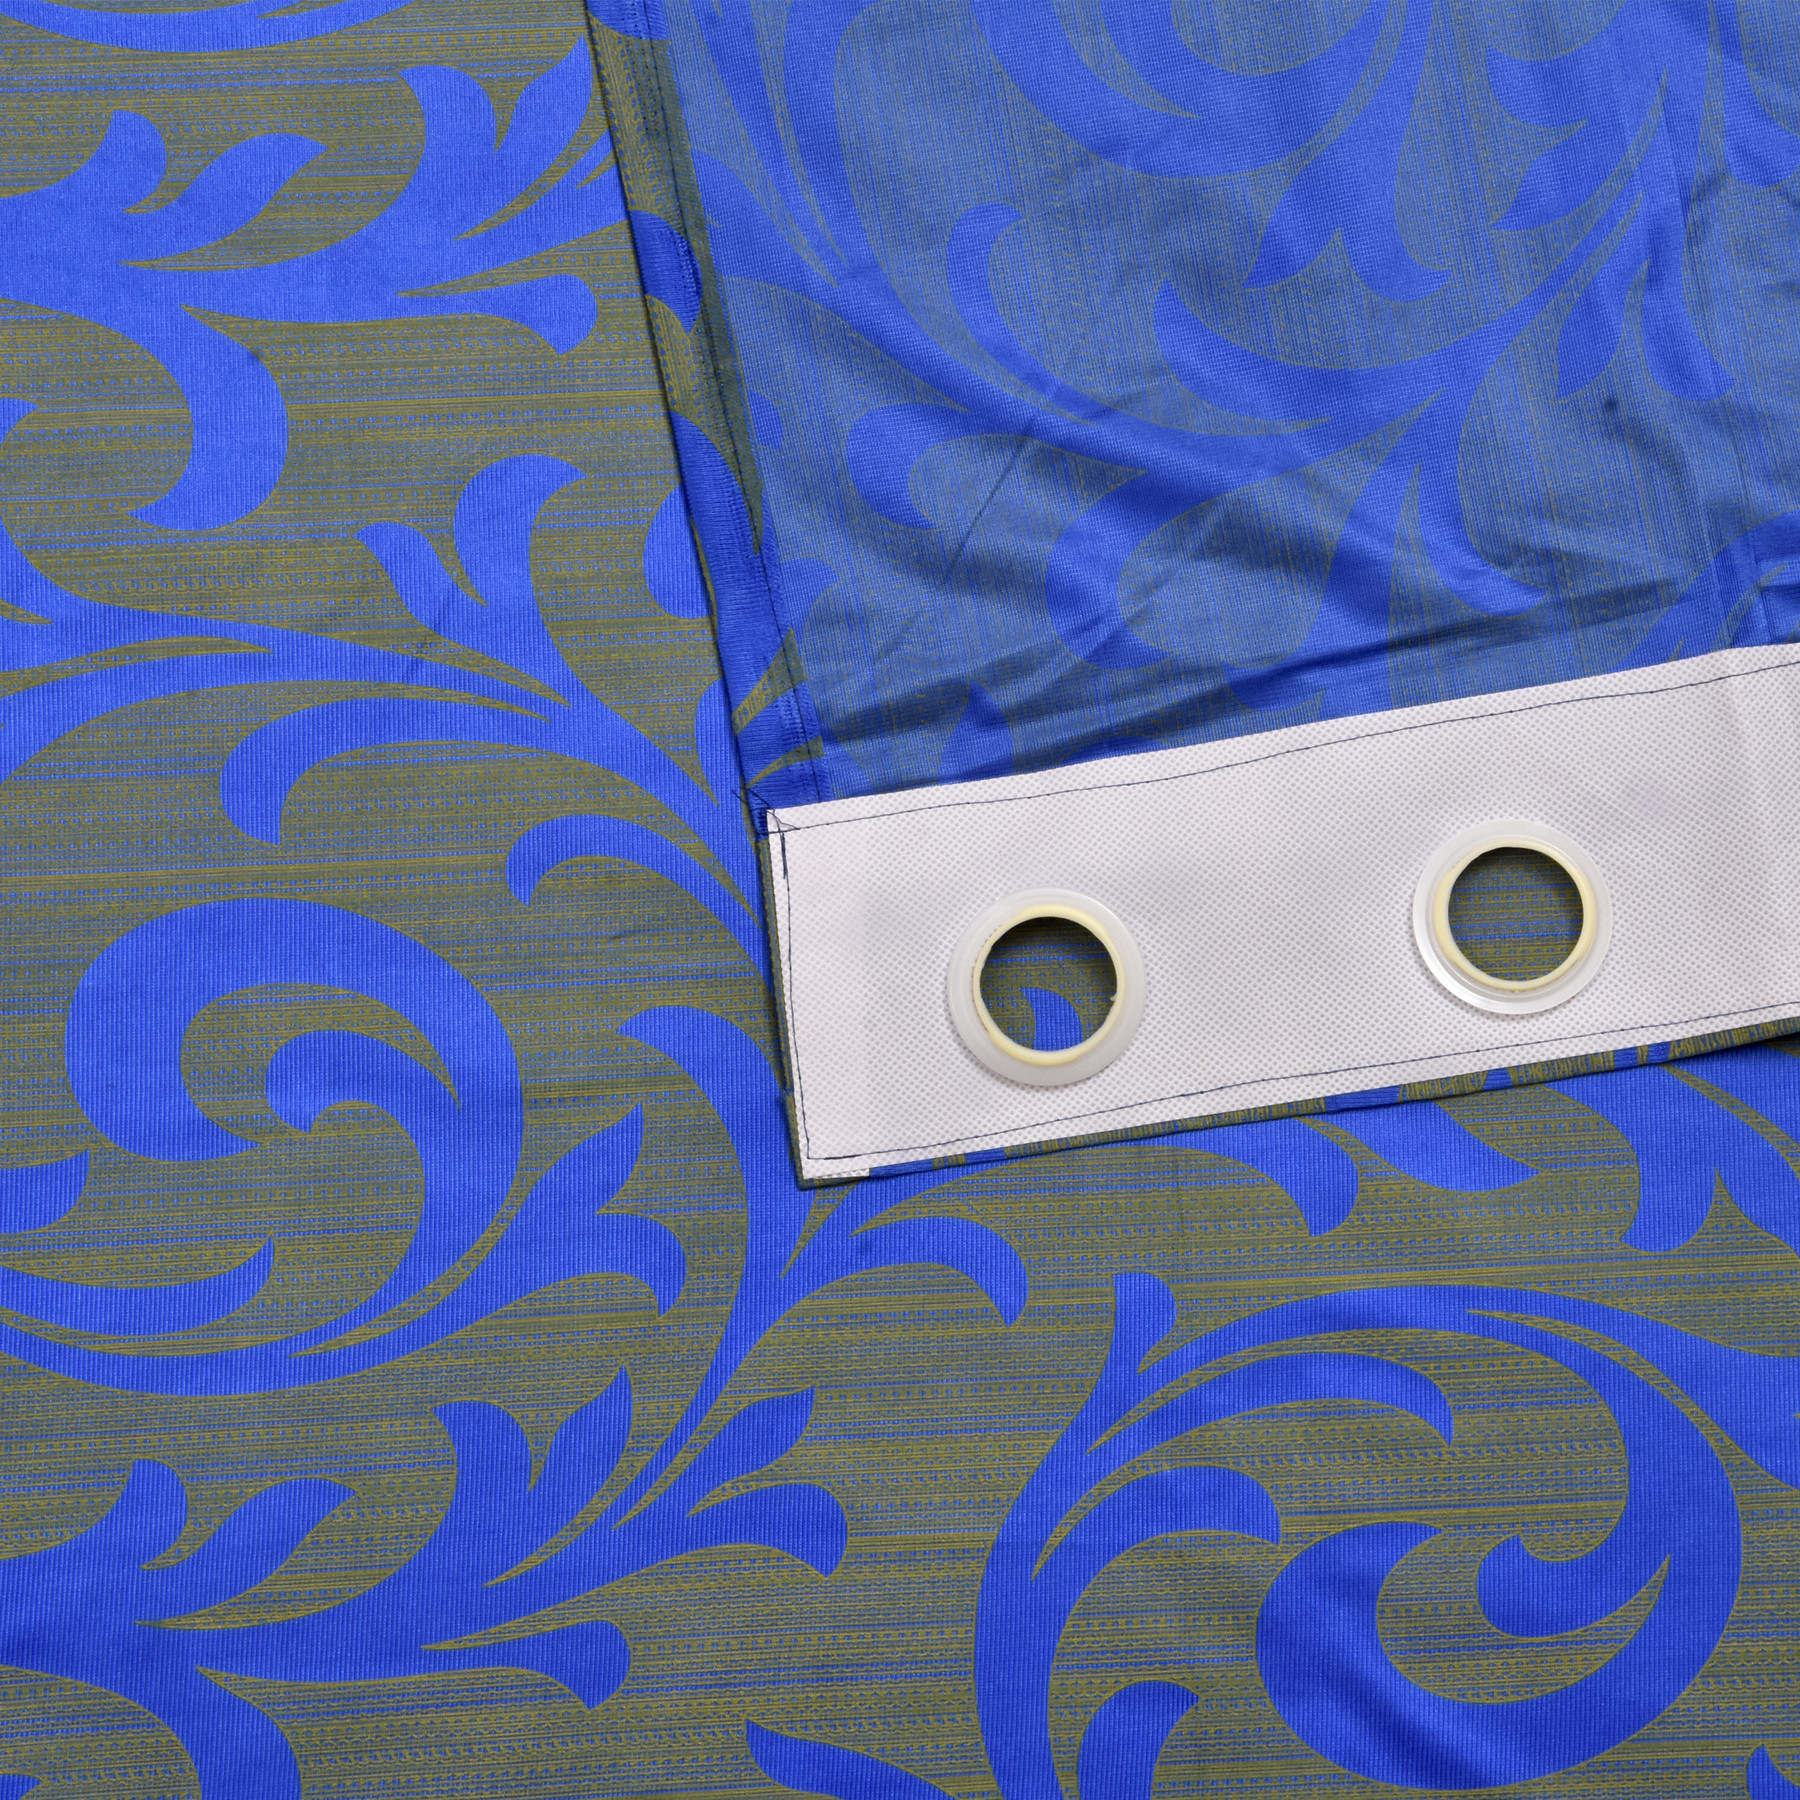 Kuber Industries Leaf Print Room Darkening Door Curtain, 7 Feet (Blue)